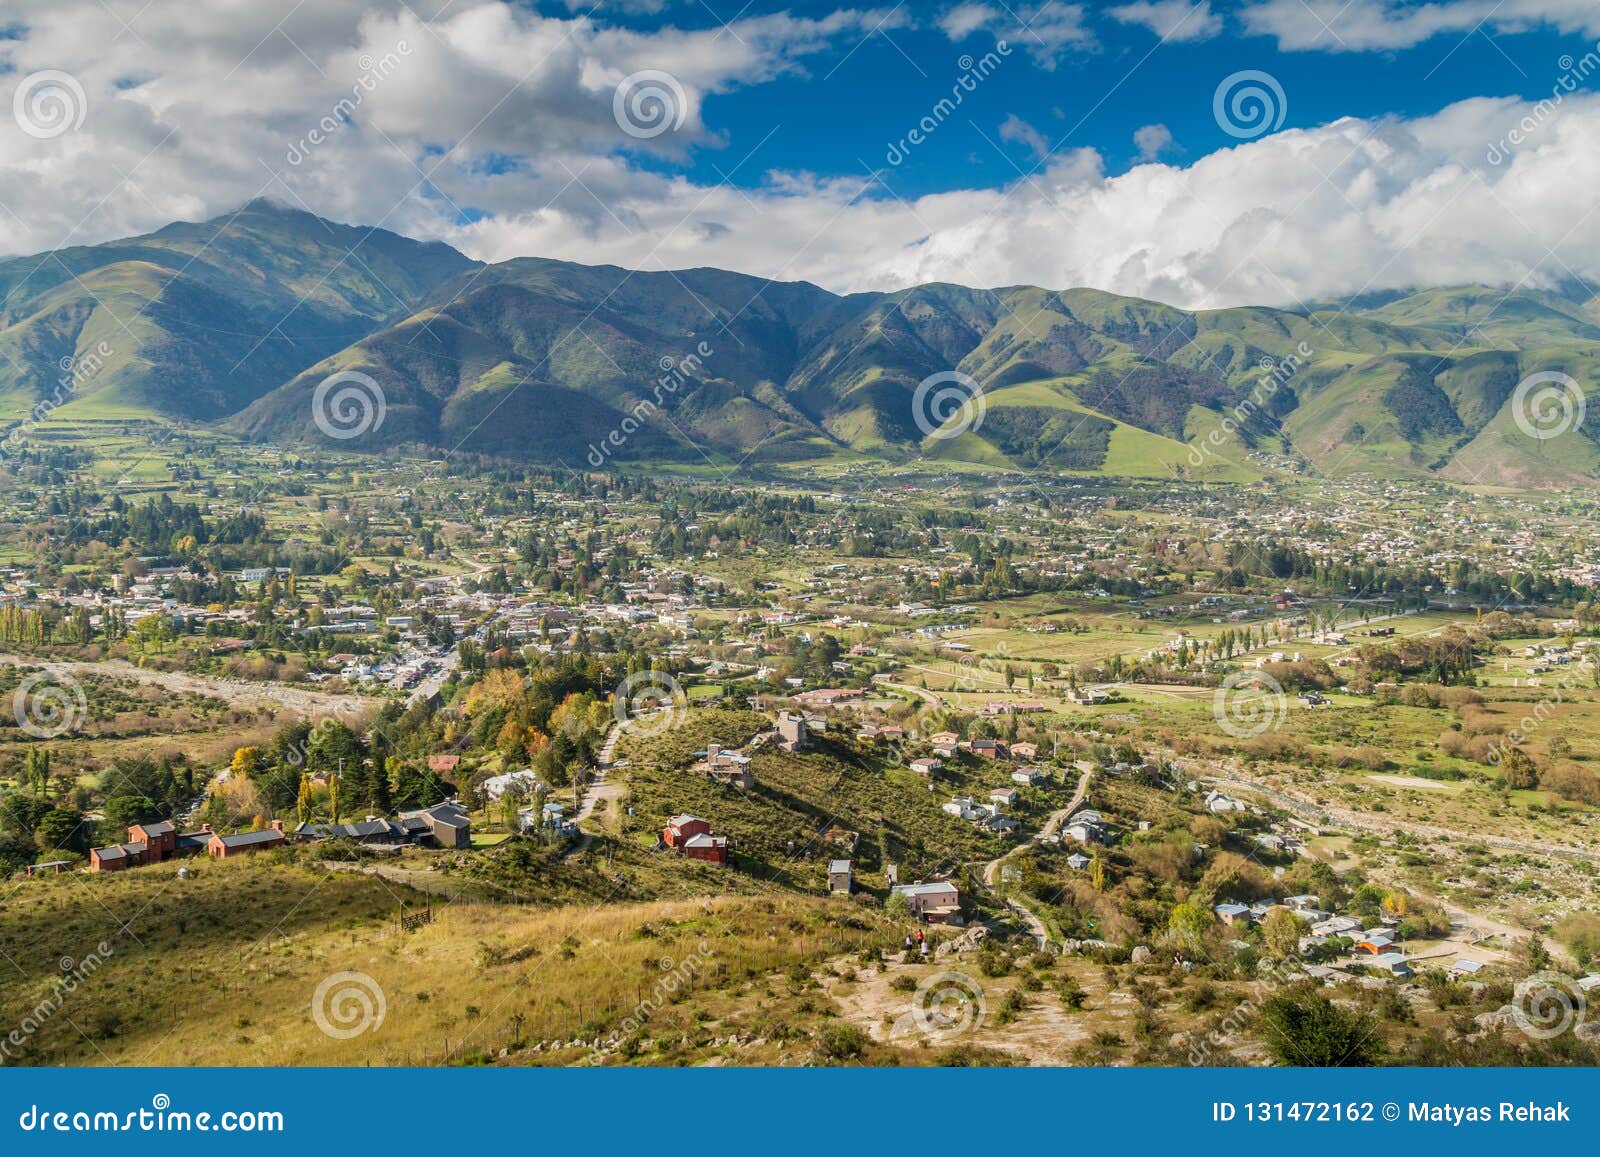 aerial view of tafi del valle, argenti